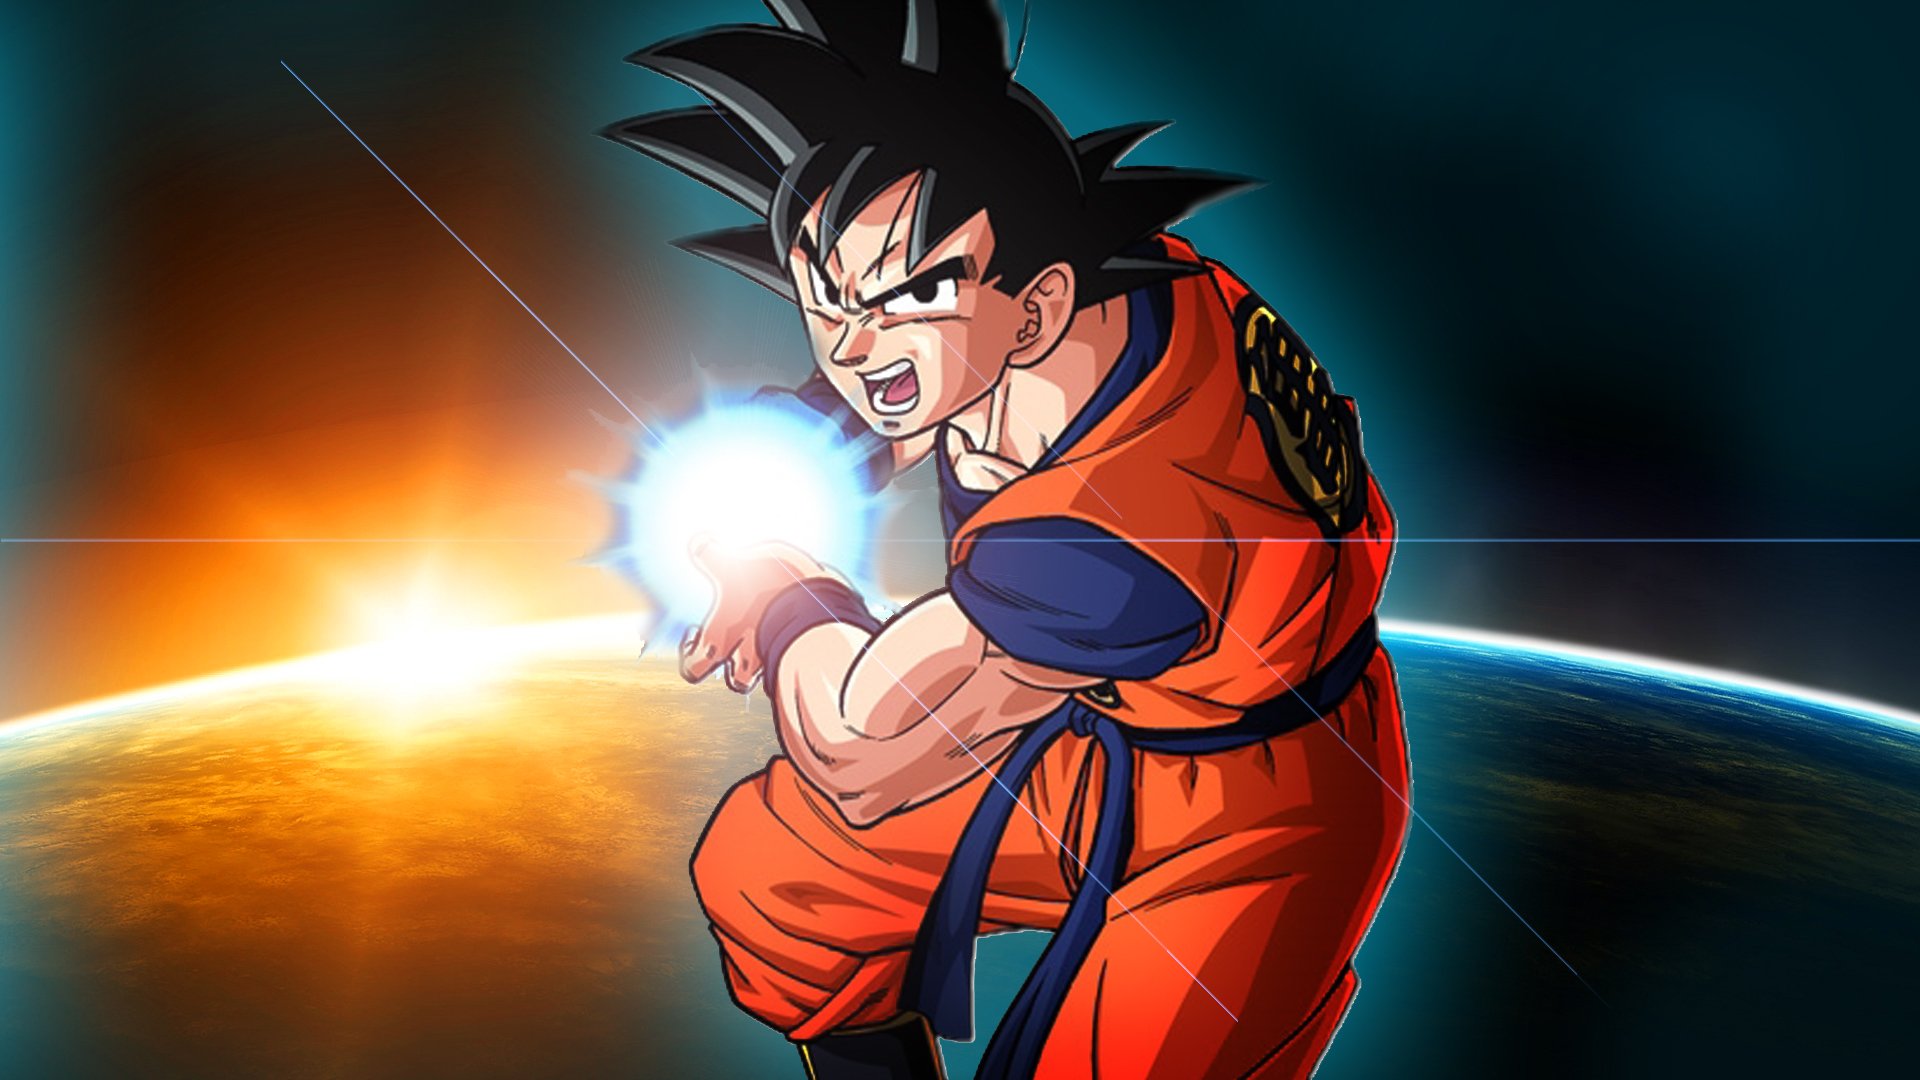 Goku - Goku Dragon Ball Z - HD Wallpaper 